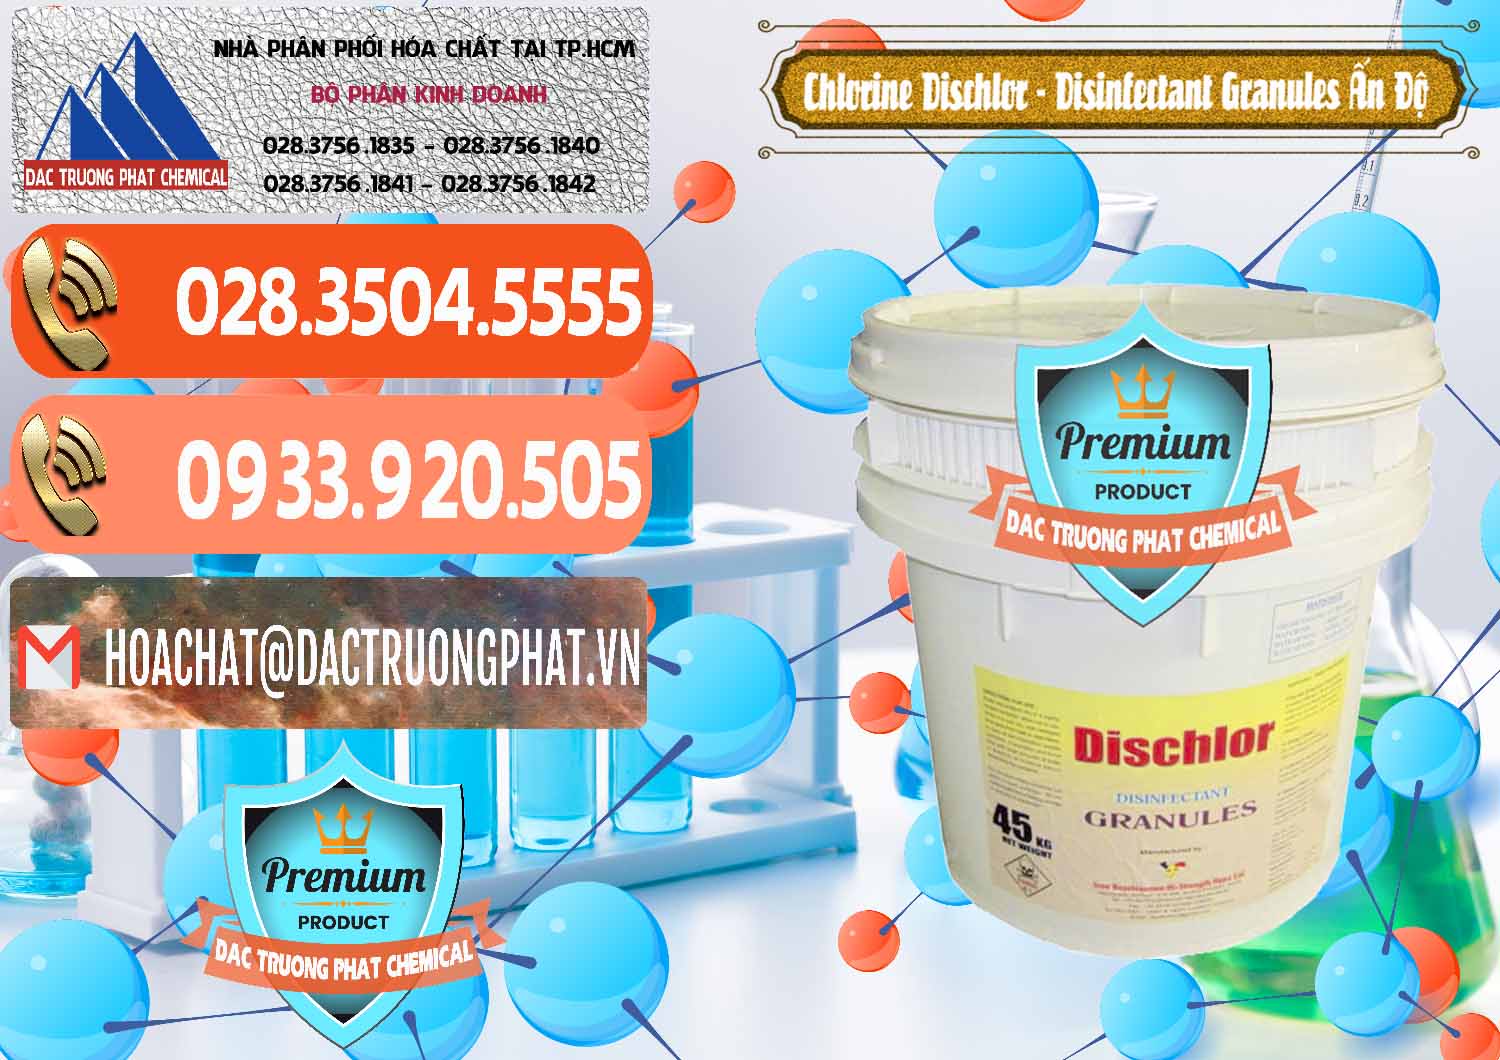 Cung cấp - bán Chlorine – Clorin 70% Dischlor - Disinfectant Granules Ấn Độ India - 0248 - Nhà cung cấp và phân phối hóa chất tại TP.HCM - hoachatmientay.com